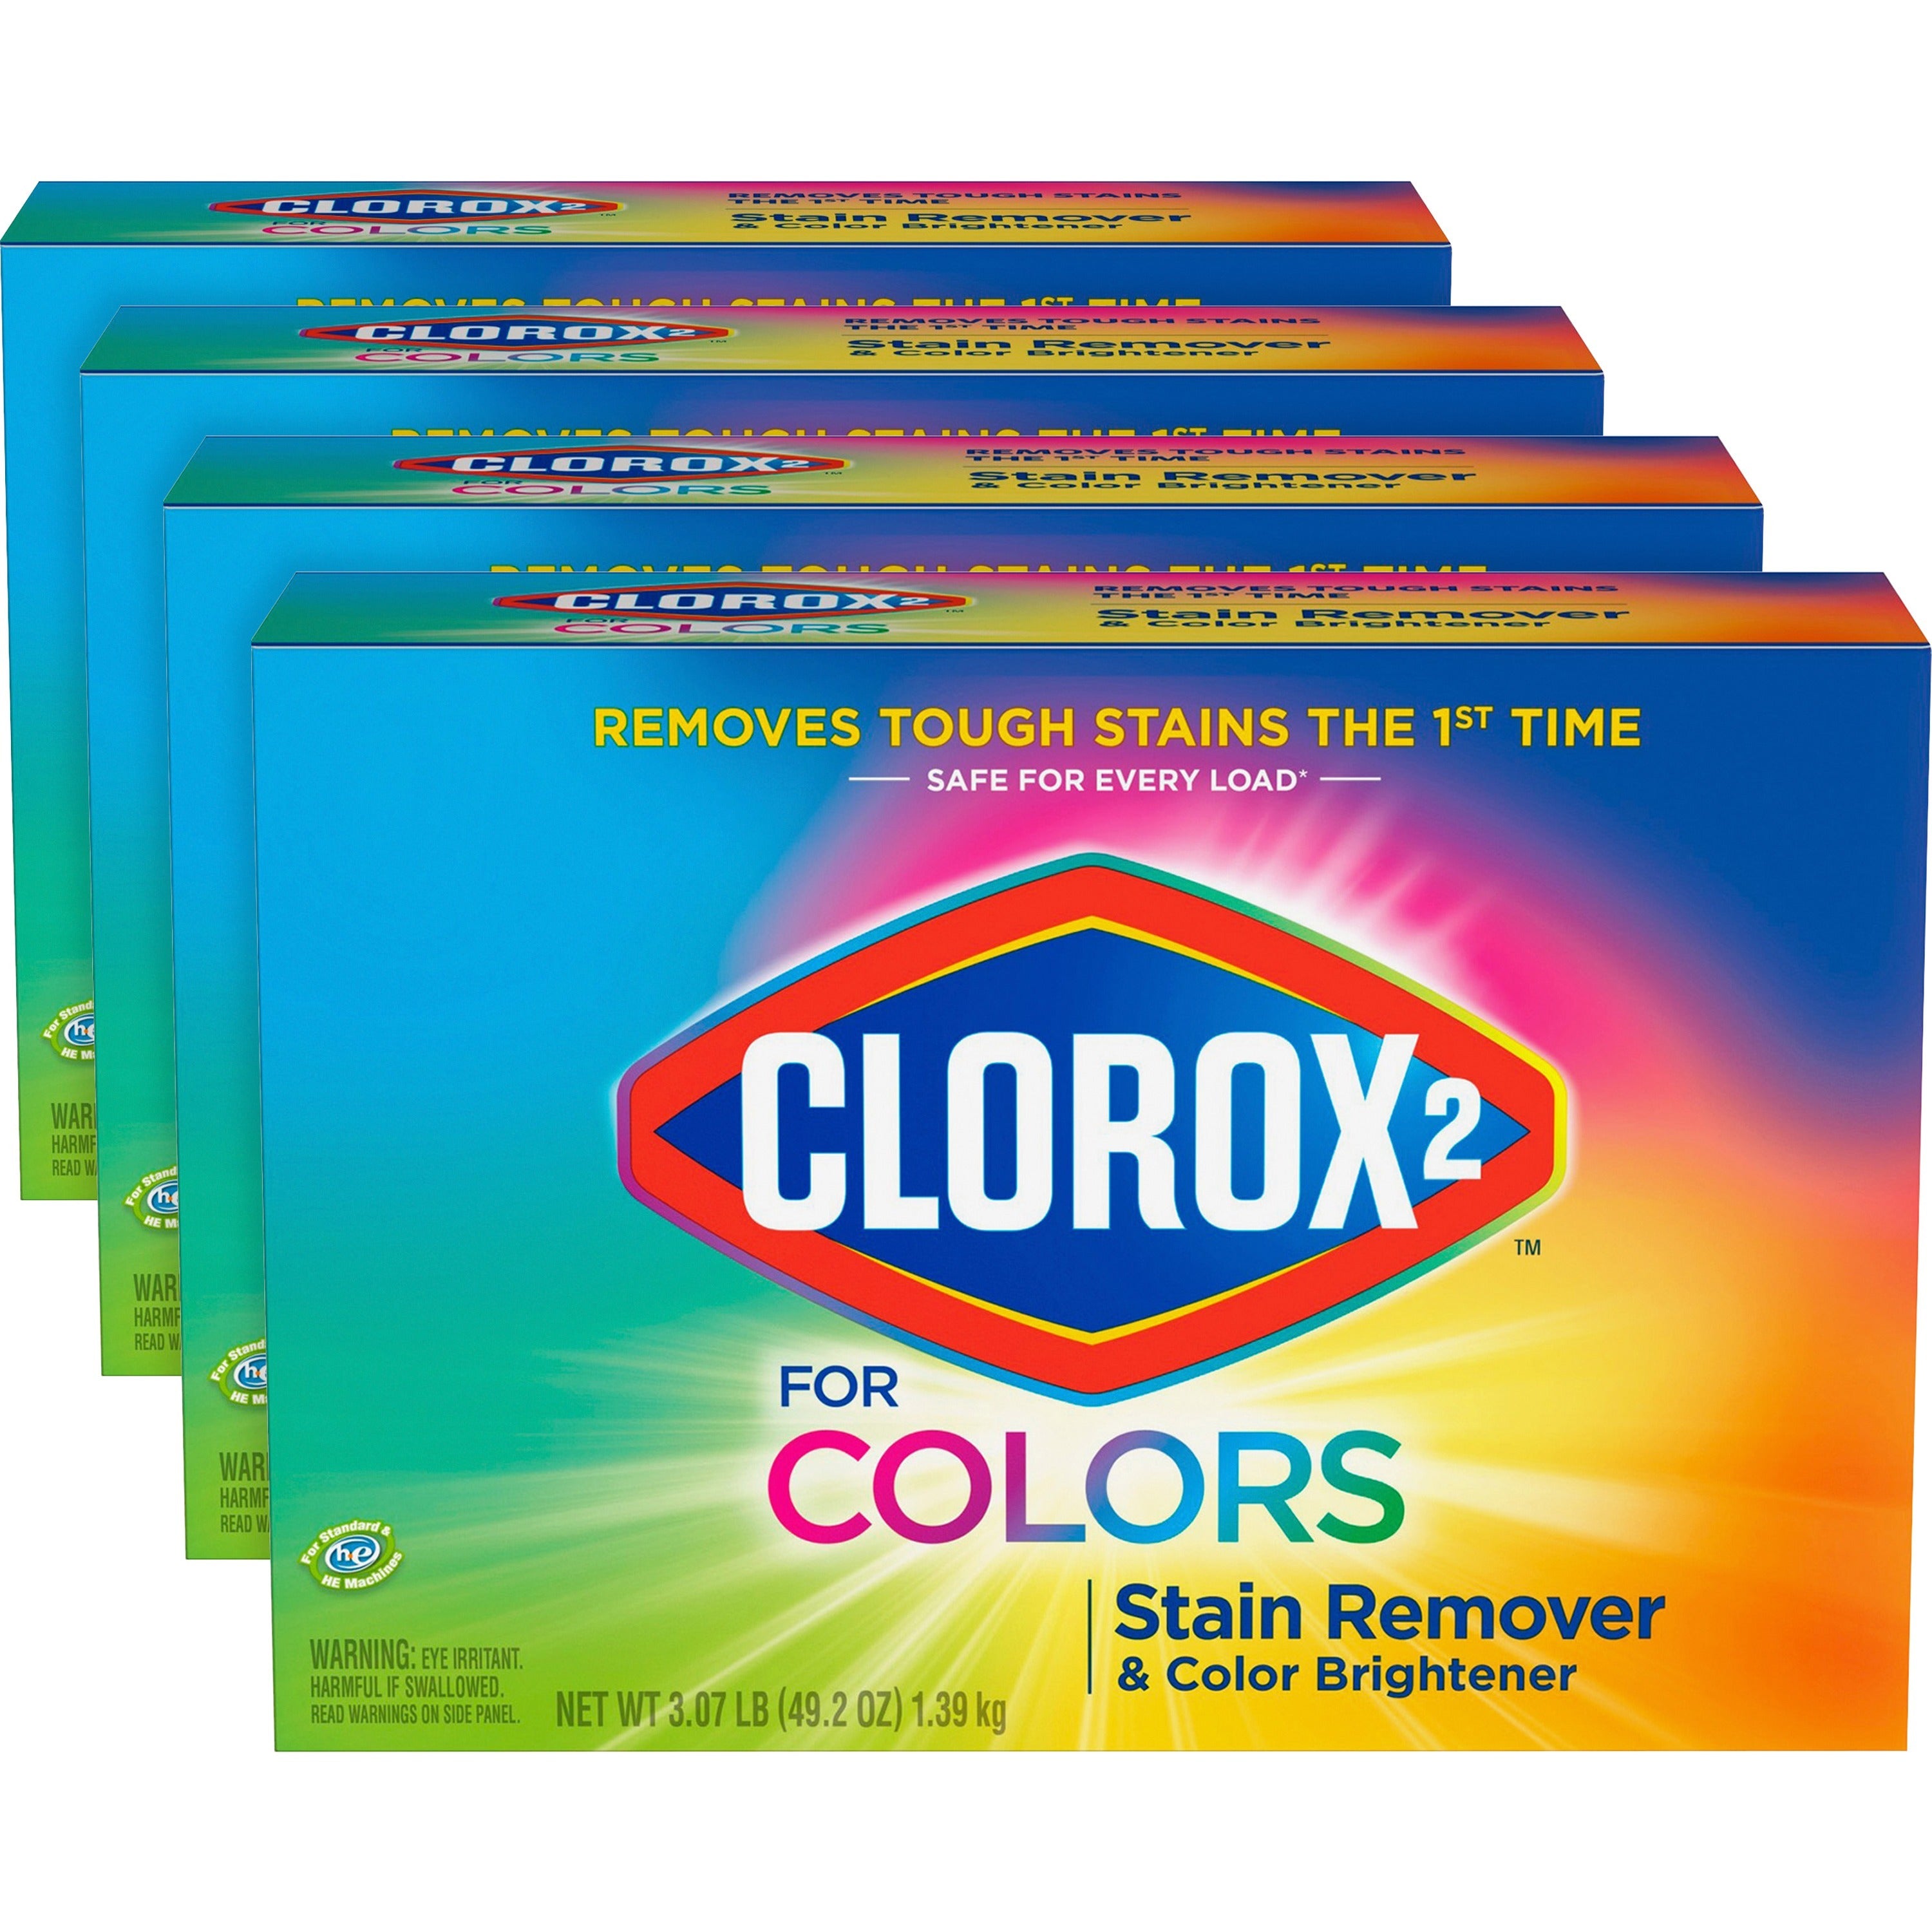 clorox-2-for-colors-stain-remover-and-color-brightener-powder-4920-oz-307-lb-4-carton-multi_clo03098ct - 1